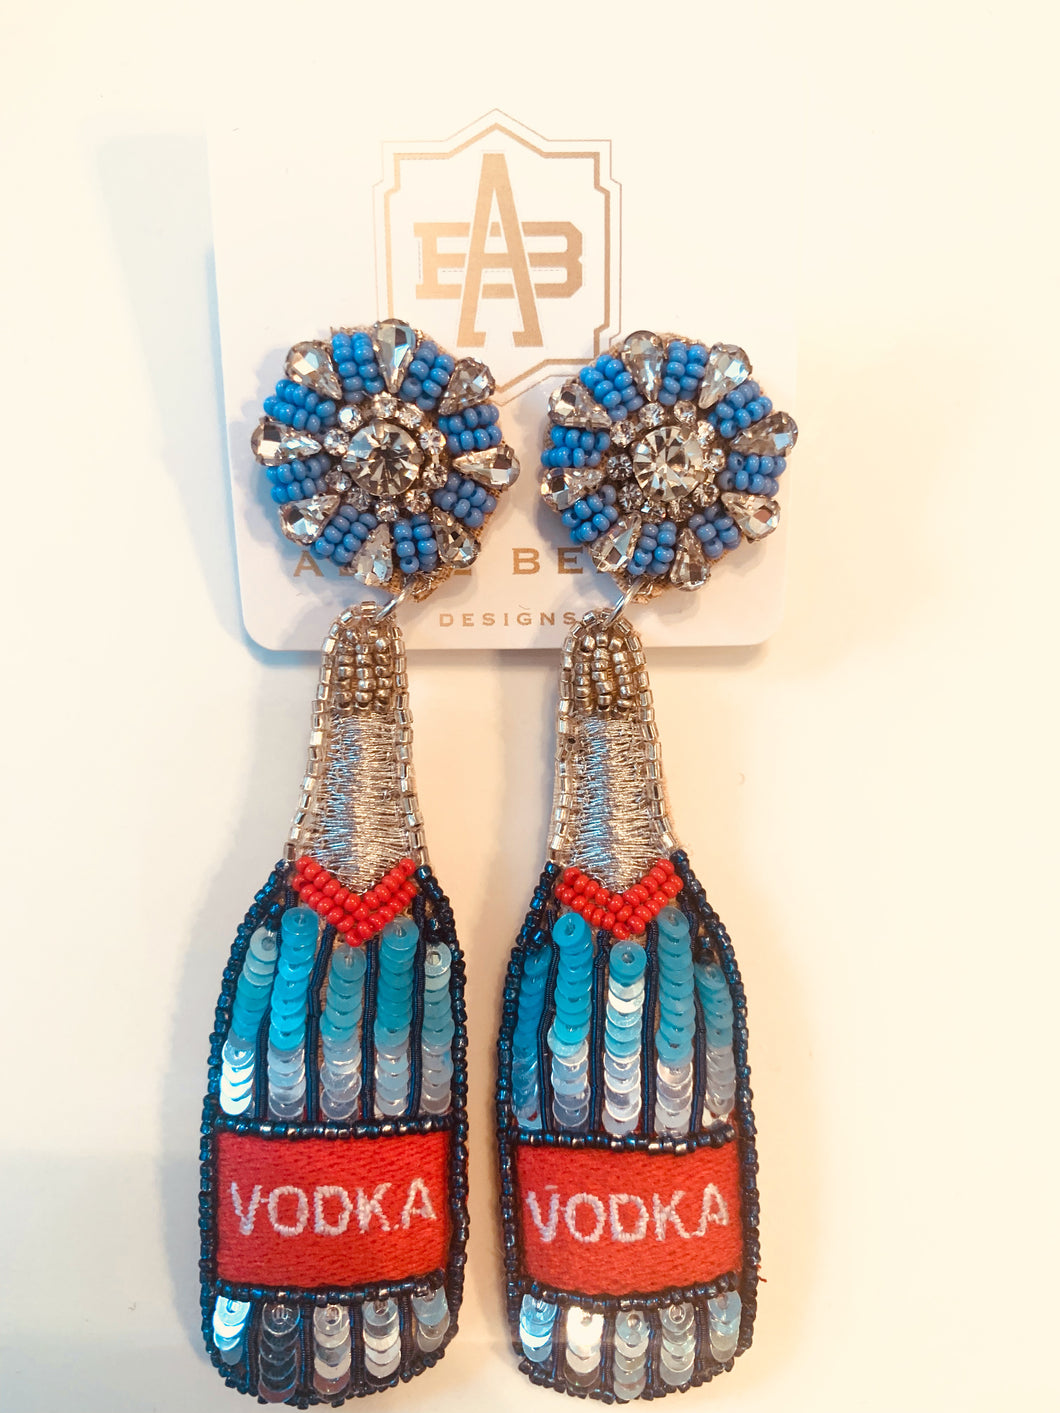 Festive Vodka Earrings